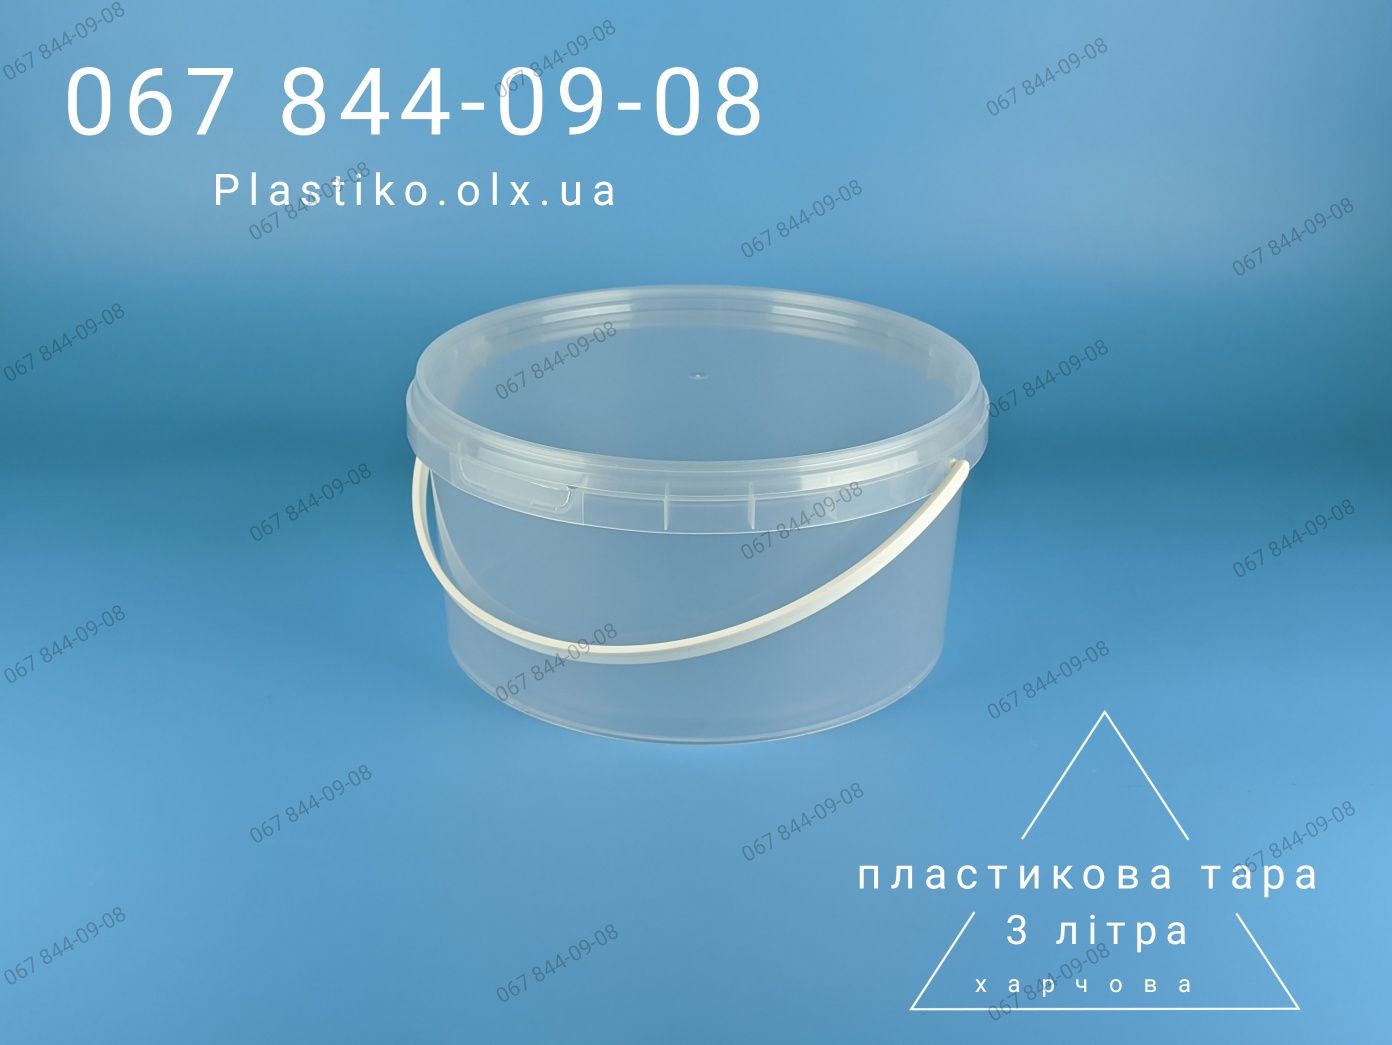 Пластикова тара від виробника: відра пластикові / пластиковые ведра 3л